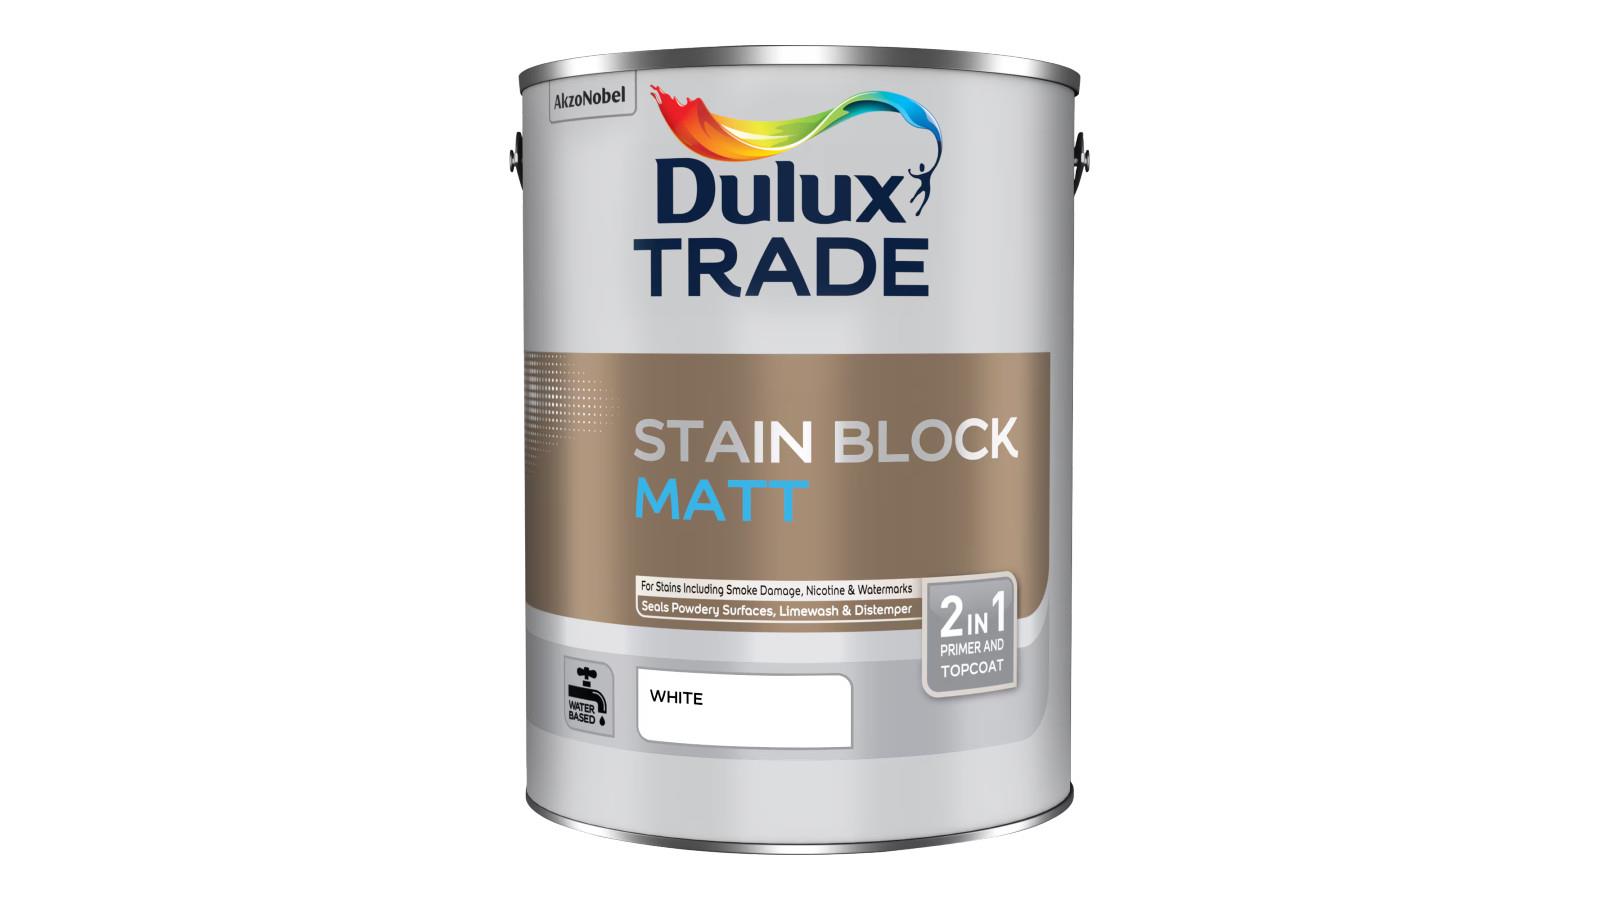 Dulux Trade Stain Block Matt: Improved Opacity, Whiteness and Matt Finish image